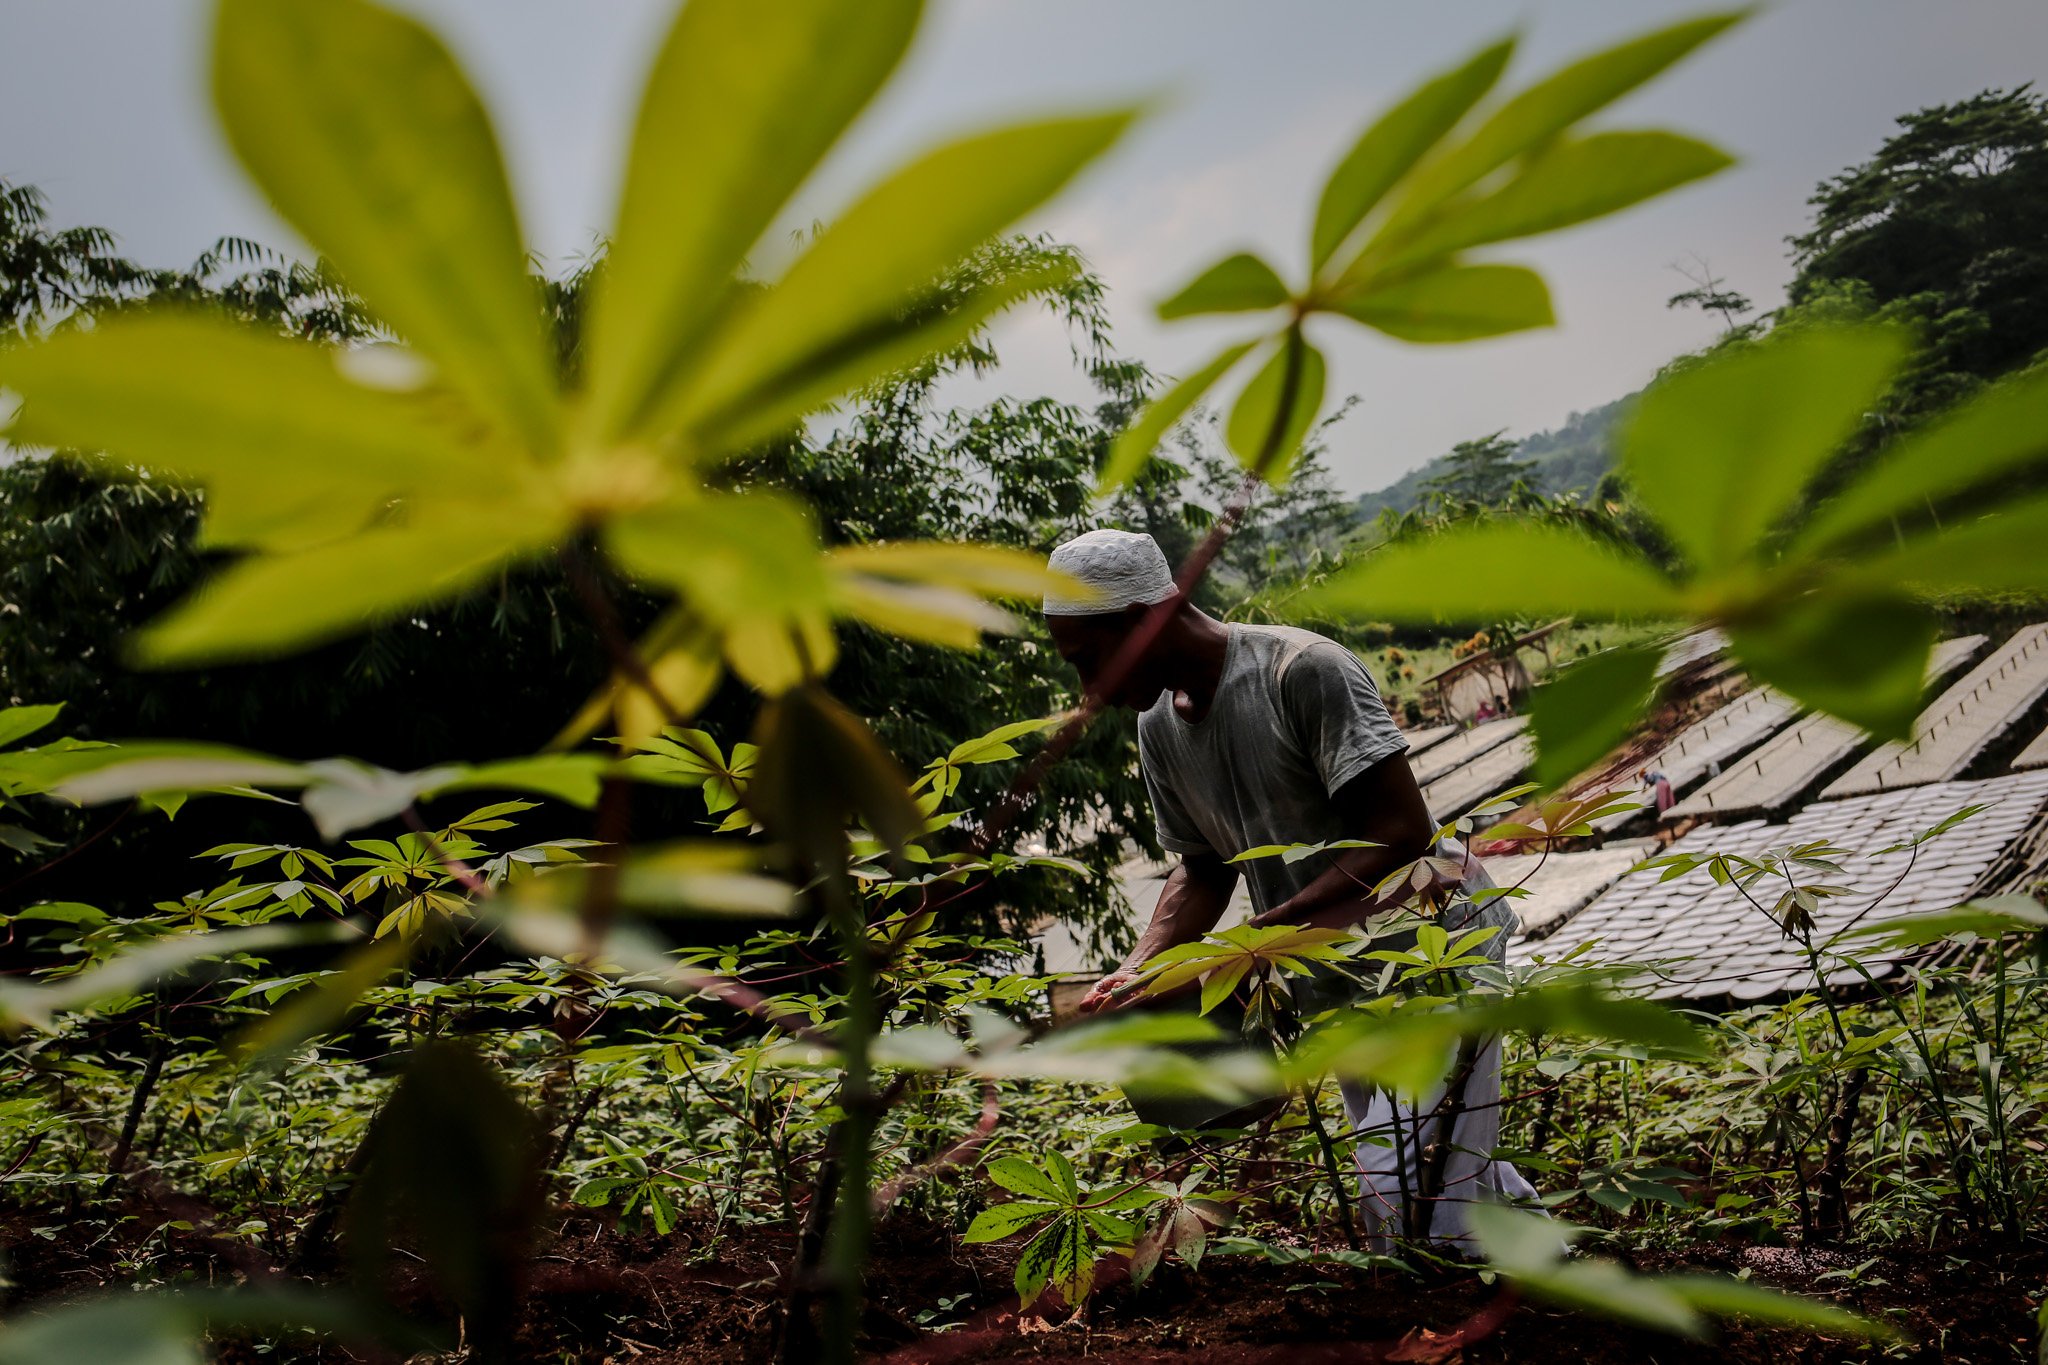 Pekerja menebar pupuk di ladang singkong di Industri rumahan pembuat tepung tapioka Kawasan Legok Nyenang, Kadumanggu, Kabupaten Bogor, Minggu (1/8/2021). Di lahan seluas 1,5 hektar pekerja mampu menghasilkan 3 - 4 ton dalam sehari dengan harga jual Rp. 10.000 /kilogram, namun di masa pandemi Covid-19 pekerja mengaku alami penurunan harga jual menjadi Rp. 6.000 /kilogram.